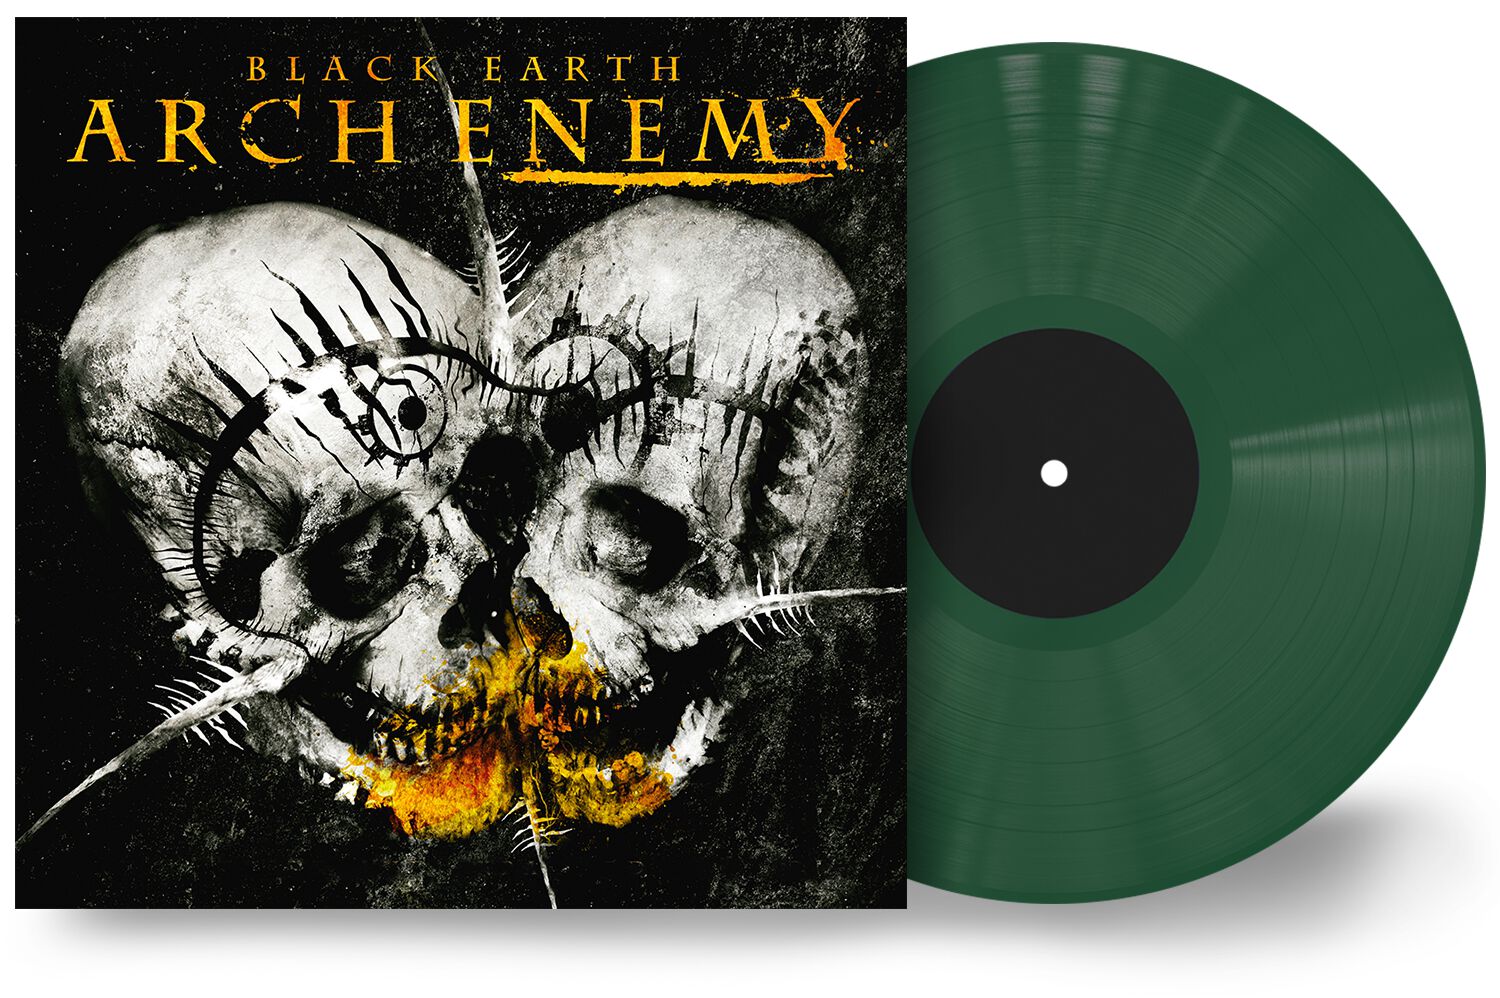 Arch Enemy - 'Black Earth' Ltd Ed. Green Vinyl. 300 worldwide